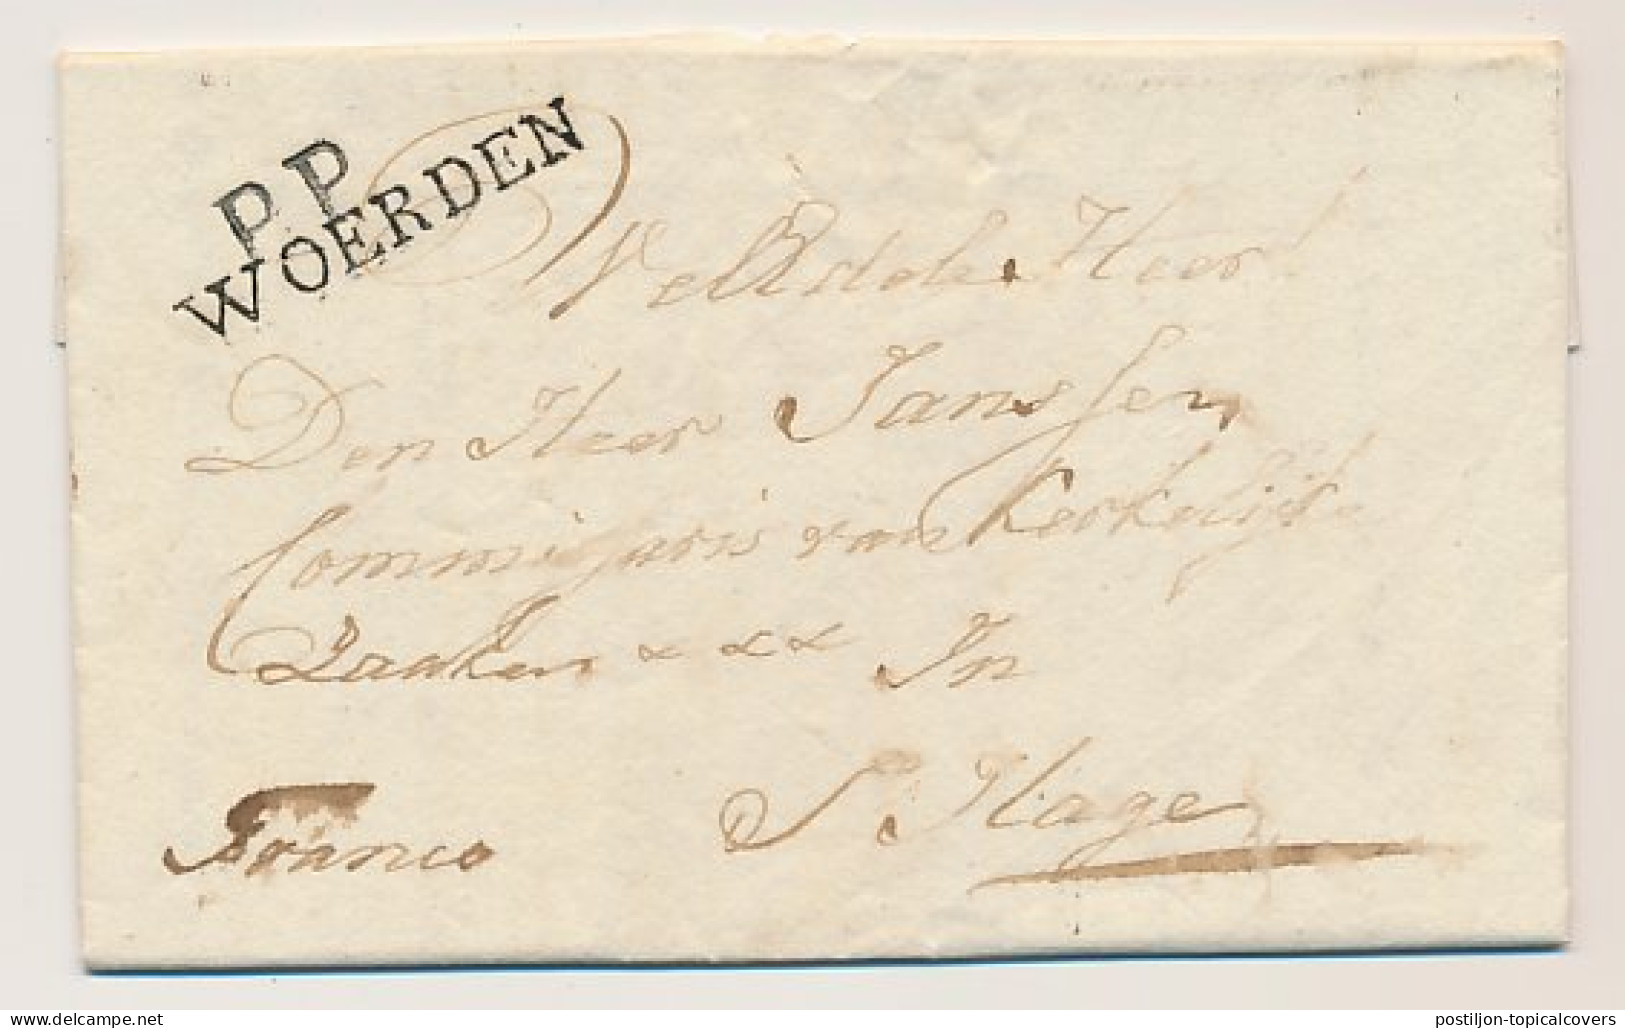 P.P. WOERDEN - S Gravenhage 1814 - ...-1852 Voorlopers